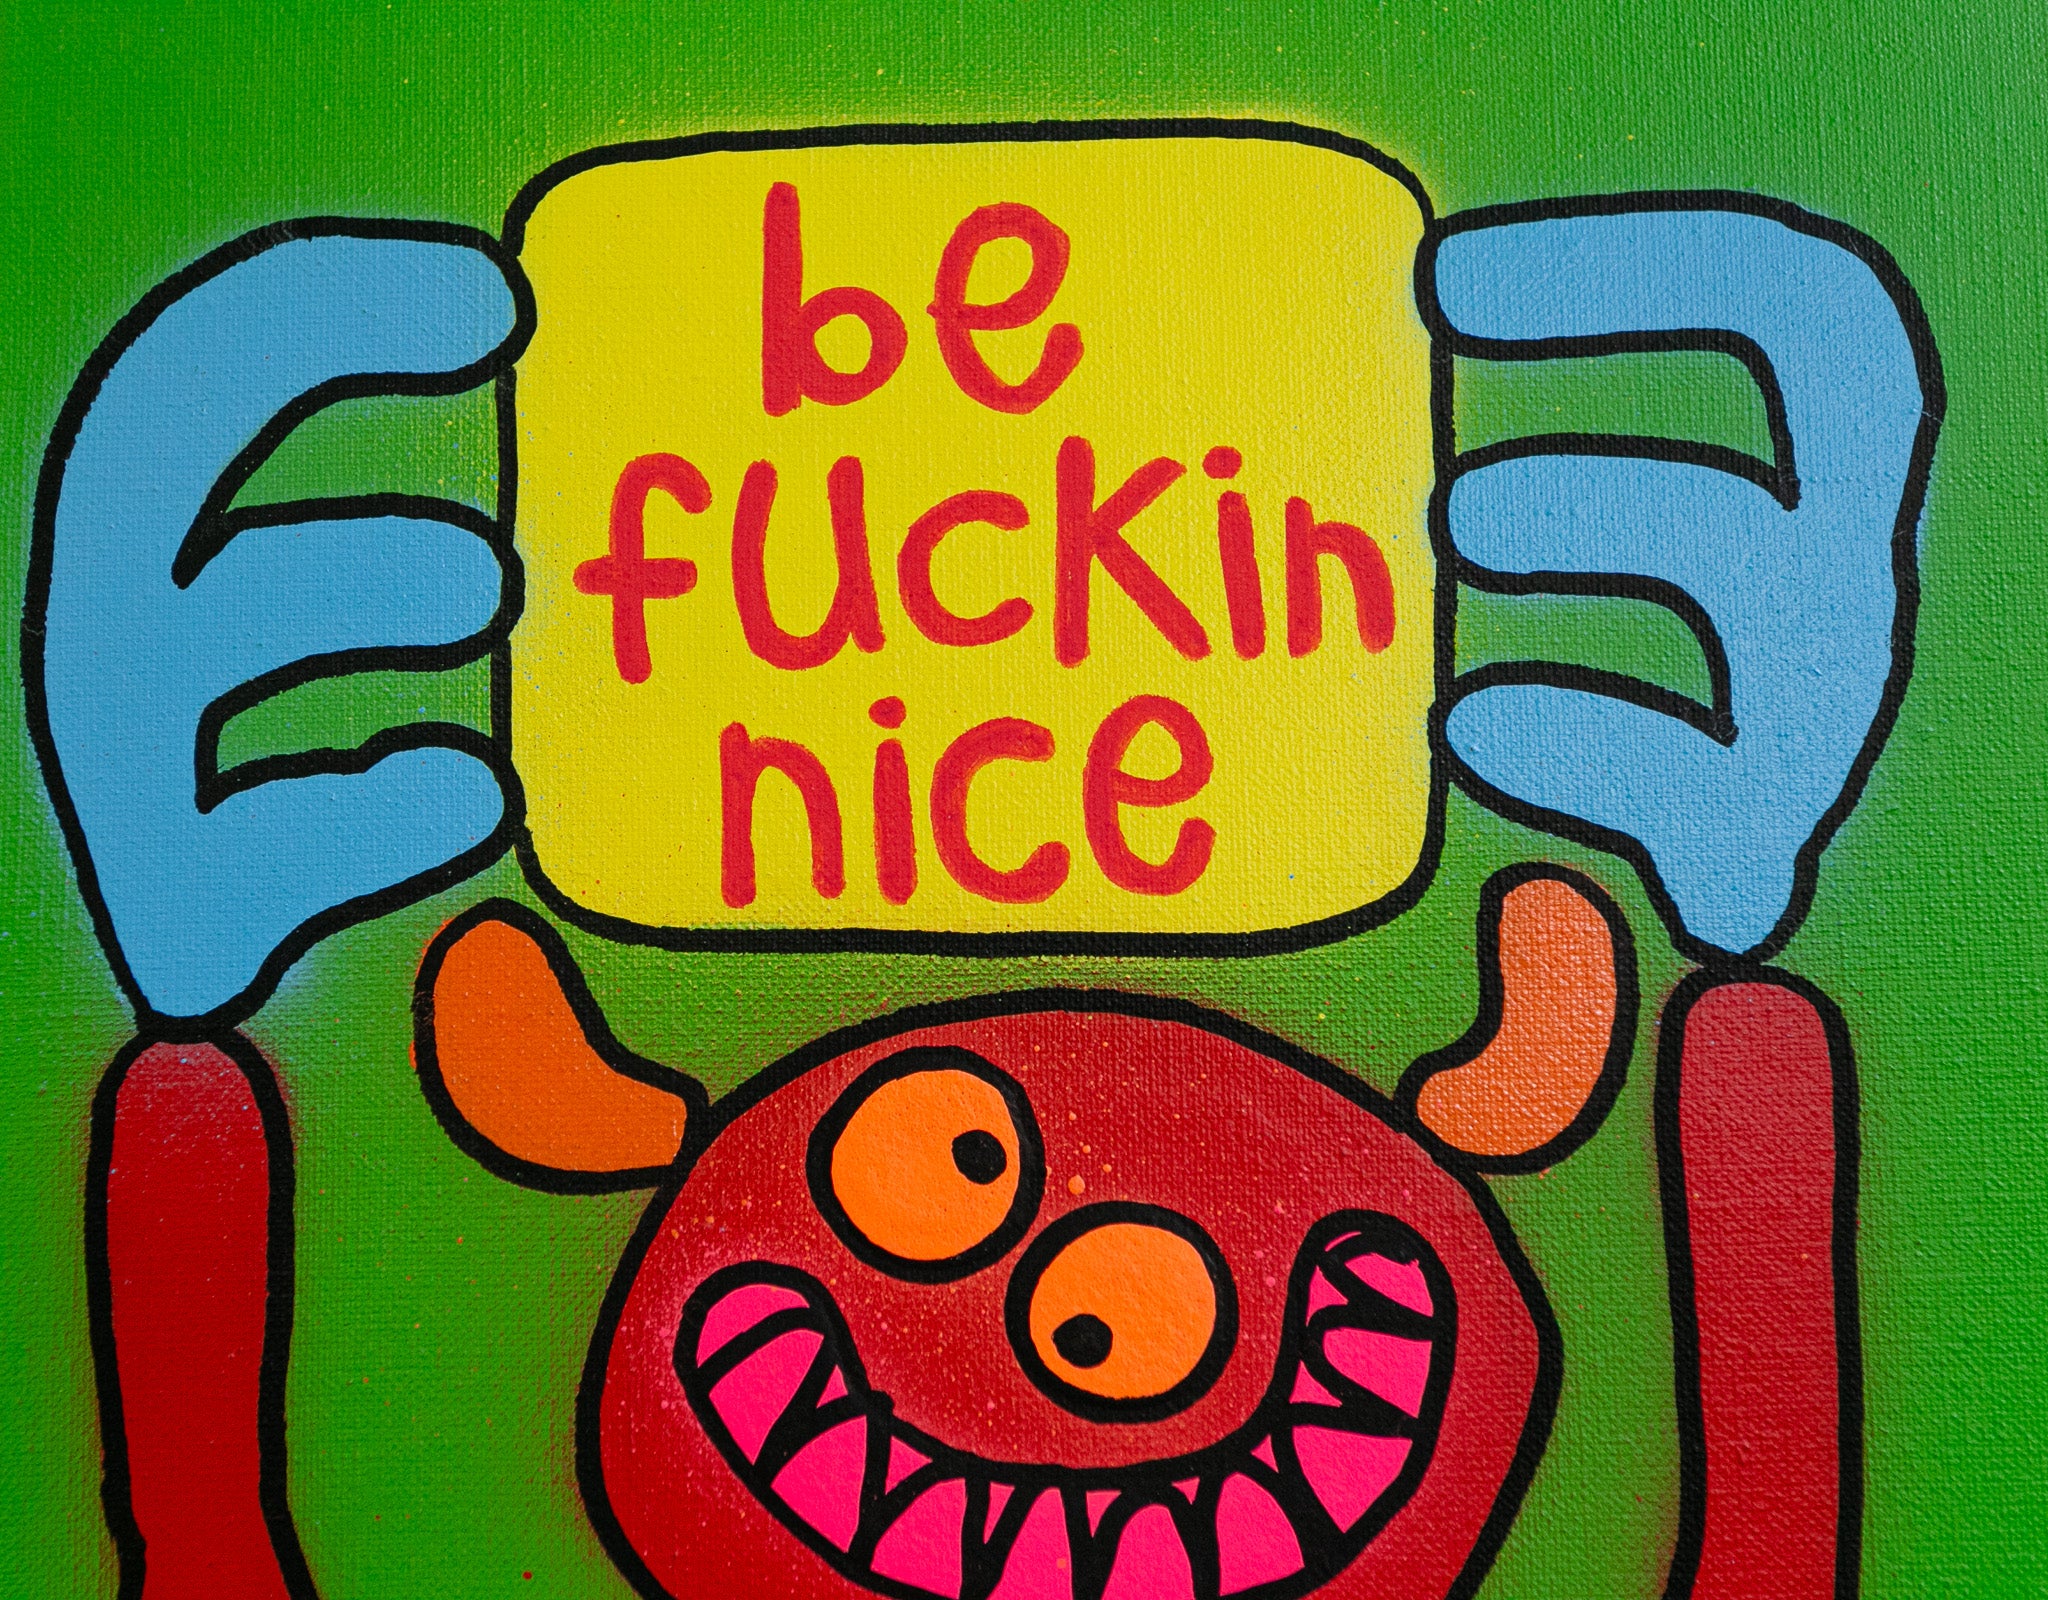 Be fuckin nice